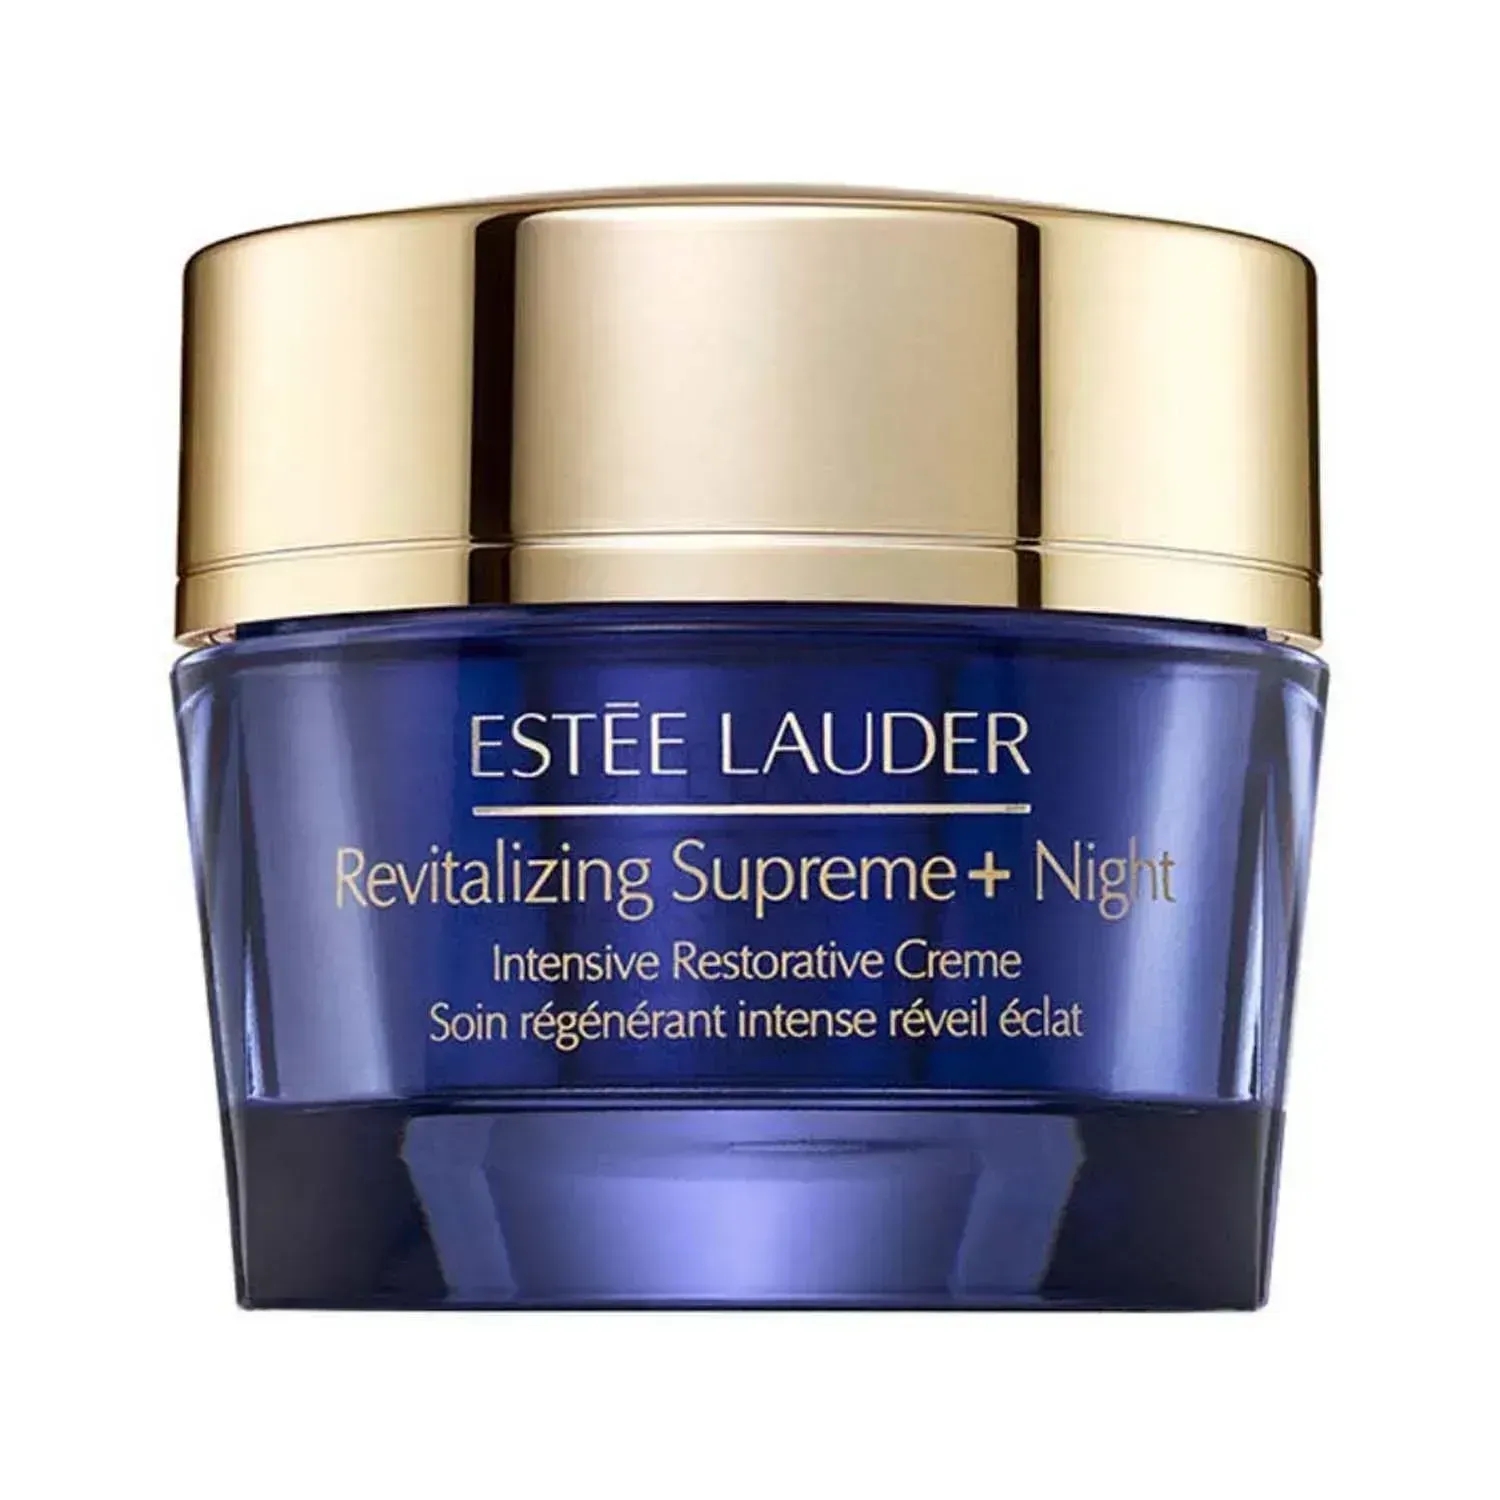 Estee Lauder | Estee Lauder Revitalizing Supreme + Night Intensive Restorative Creme - (50ml)